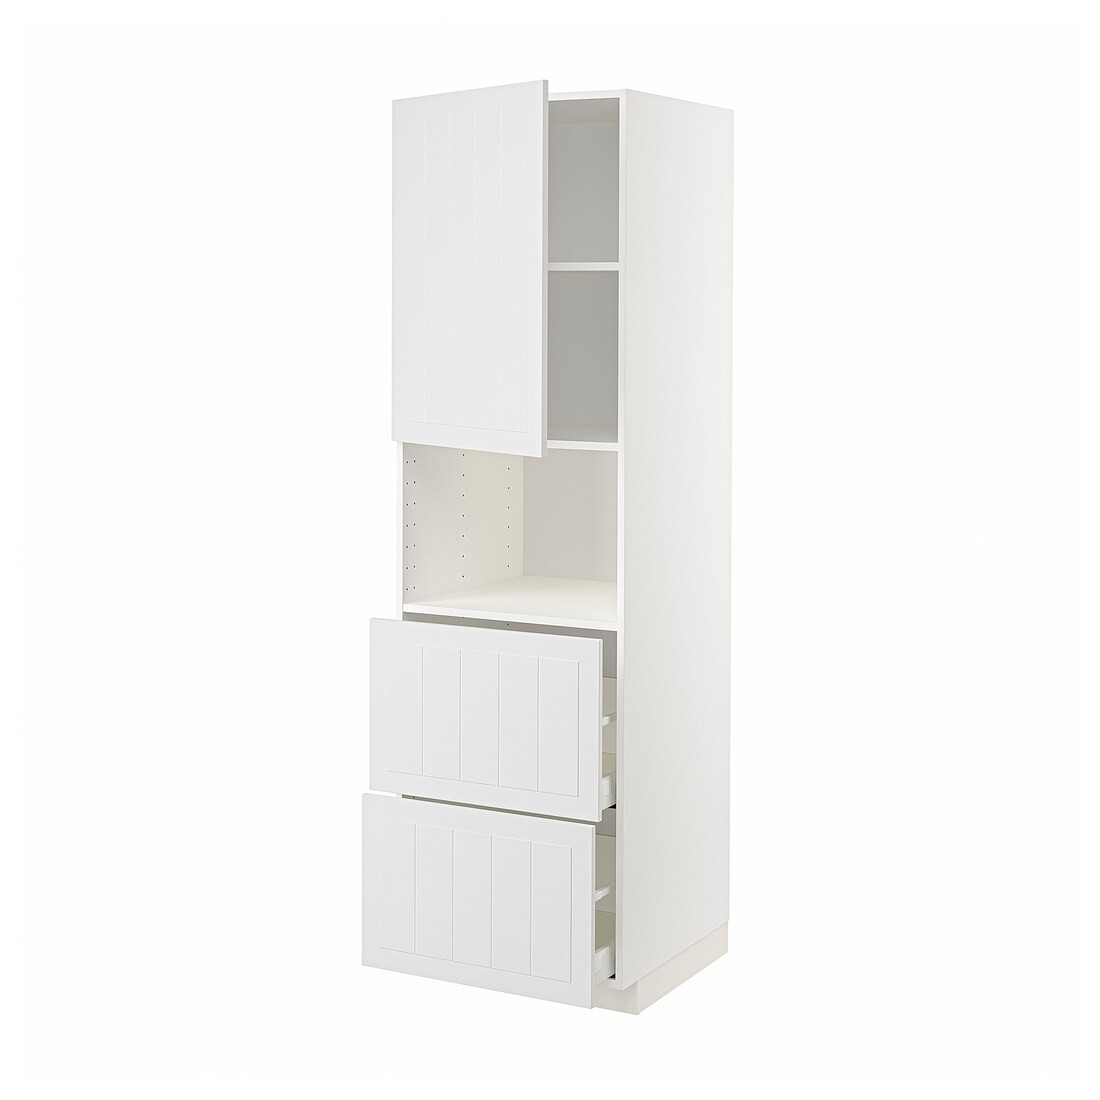 METOD МЕТОД / MAXIMERA МАКСИМЕРА Высокий шкаф для микроволновки с дверями / 2 ящика, белый / Stensund белый, 60x60x200 см